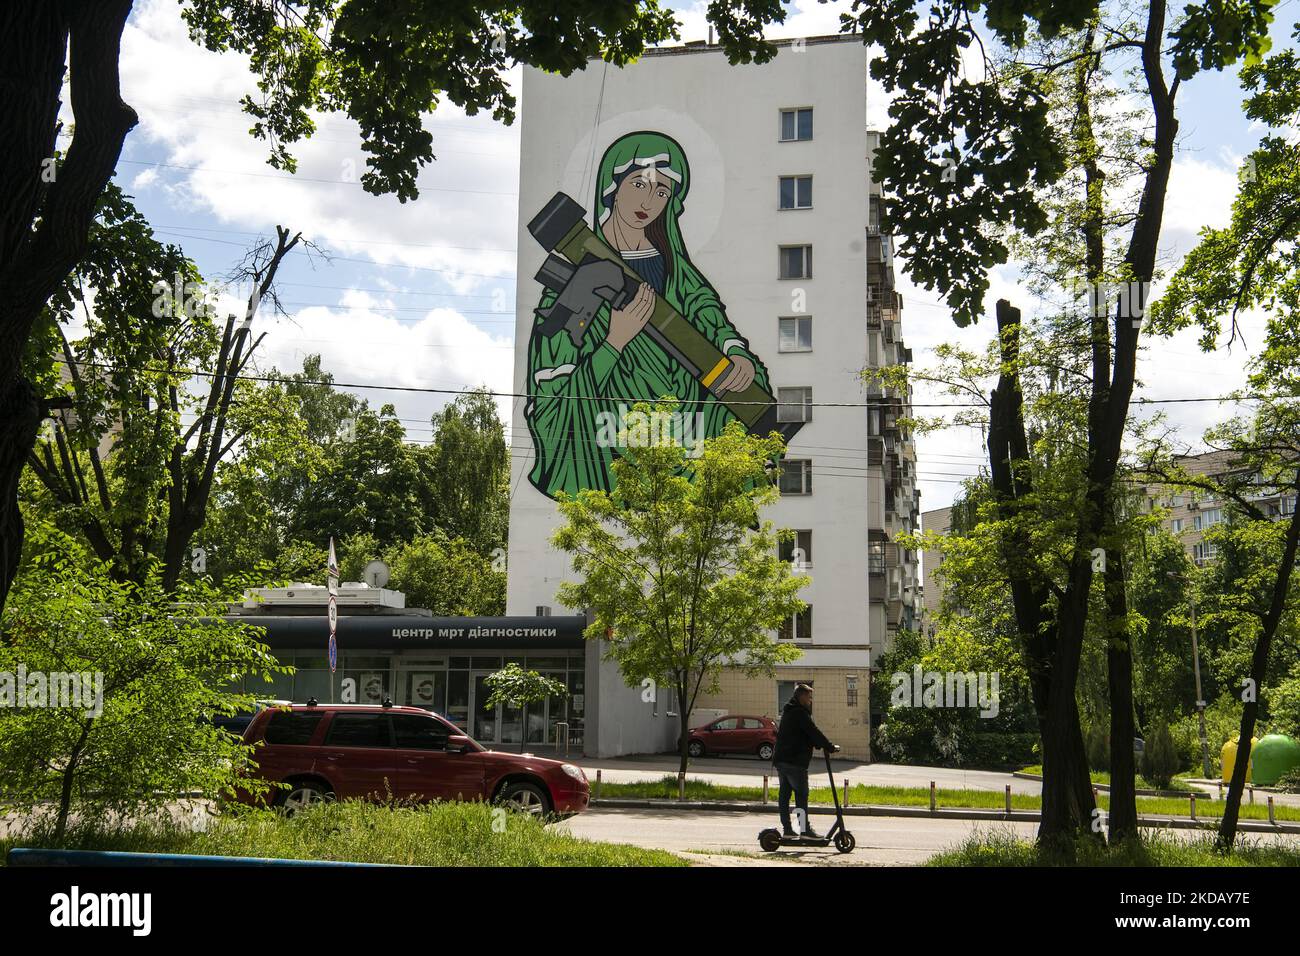 Das Wandbild „St. Javelina', eine symbolische Figur der Madonna mit einem US-Panzerabwehrraketen-"Javelin"-System, das von der ukrainischen Armee im Krieg gegen die Russen eingesetzt wird, an der Wand eines Wohnblocks in Kiew, Ukraine, 25. Mai 2022 (Foto: Maxym Marusenko/NurPhoto) Stockfoto